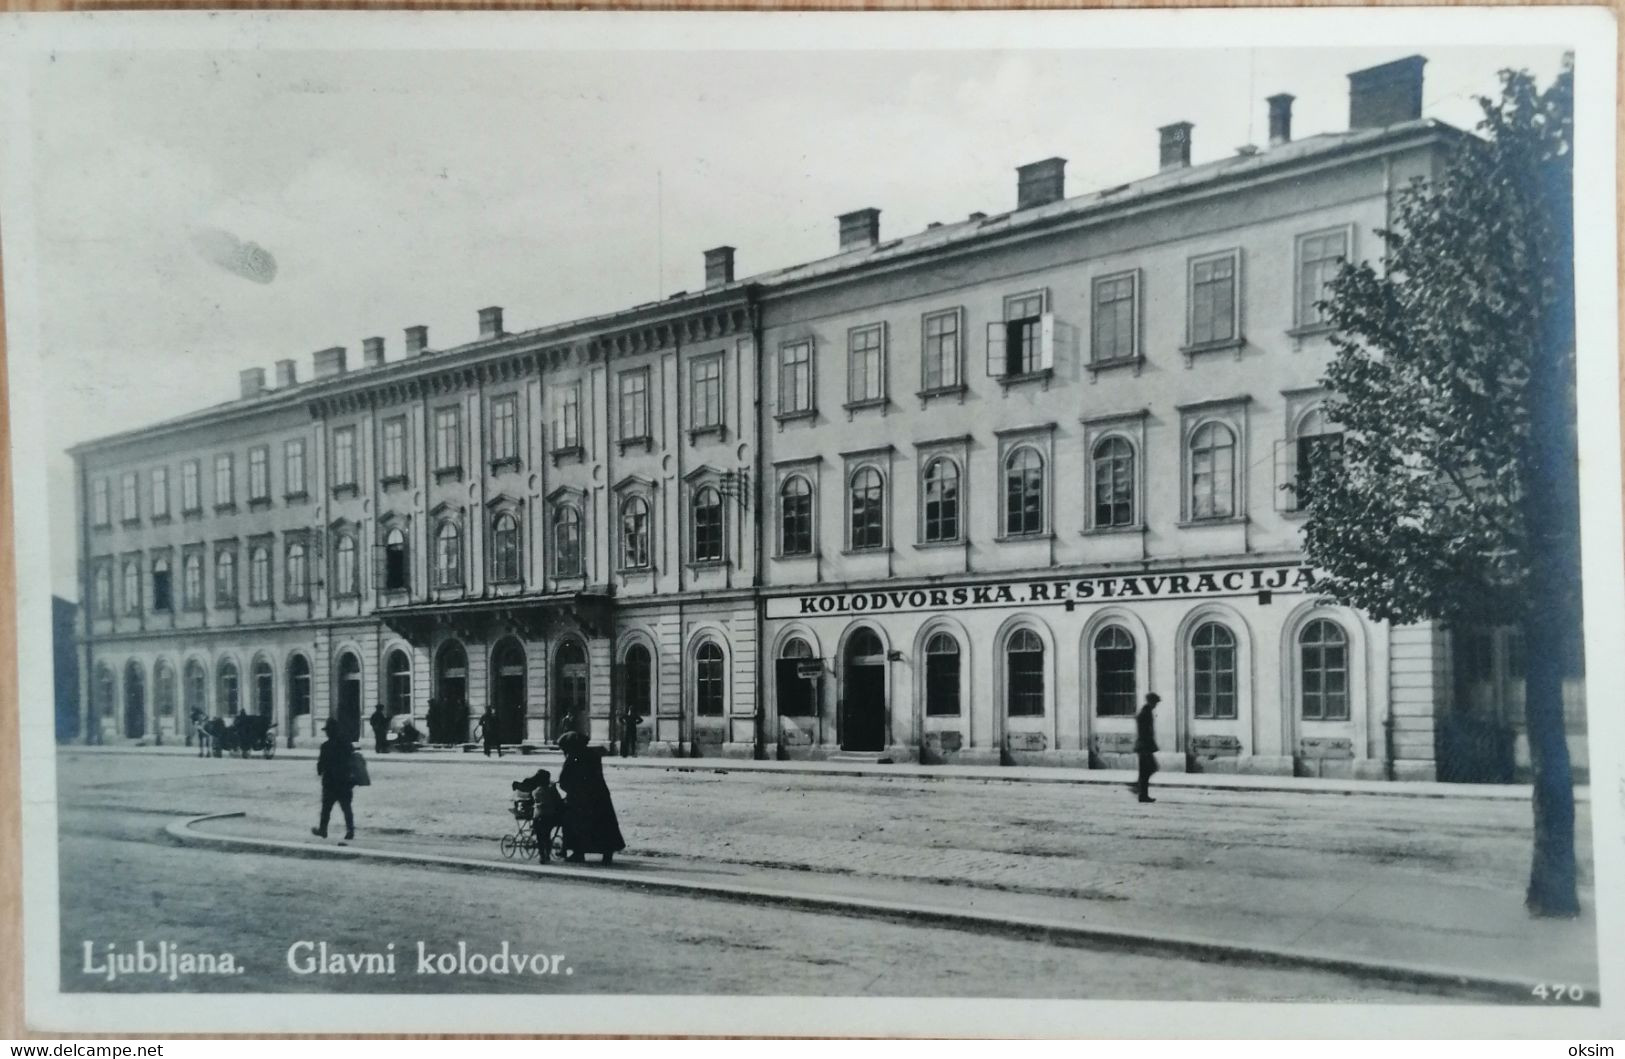 878_001 JUBLJANA, GLAVNI KOLODVOR, 1928.jpg